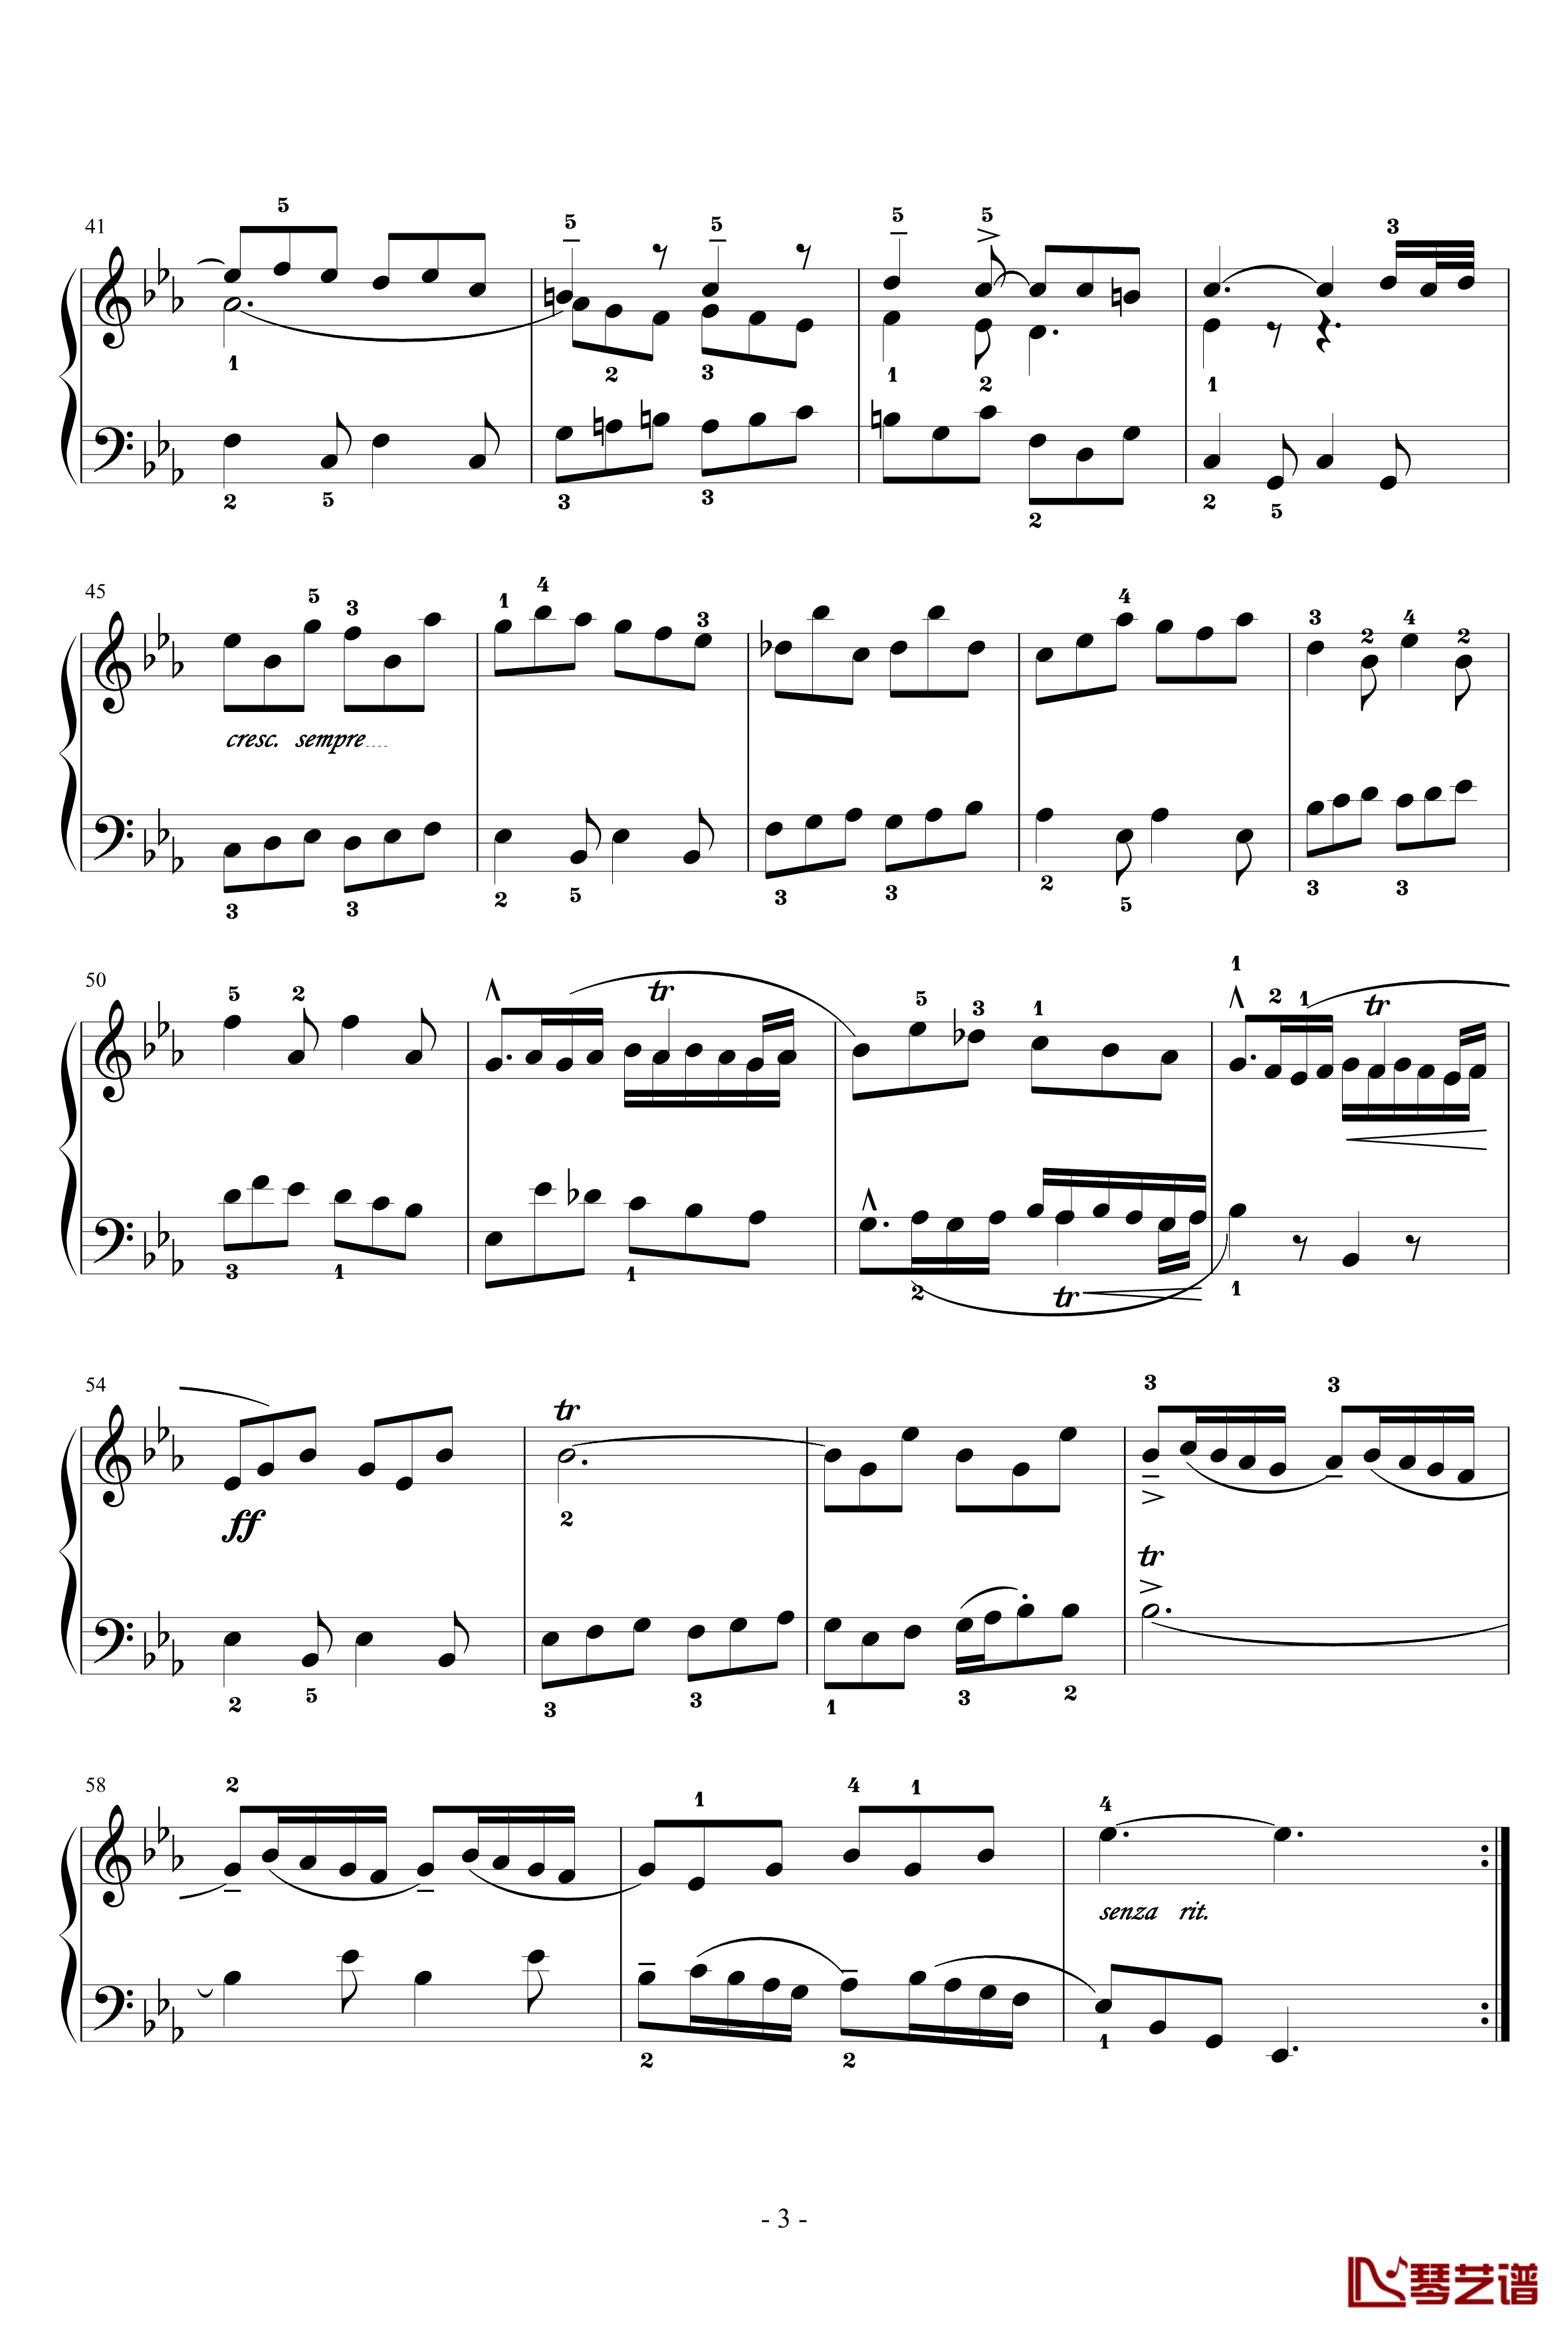 基格钢琴谱-法国组曲四 No.6-奥芬巴赫